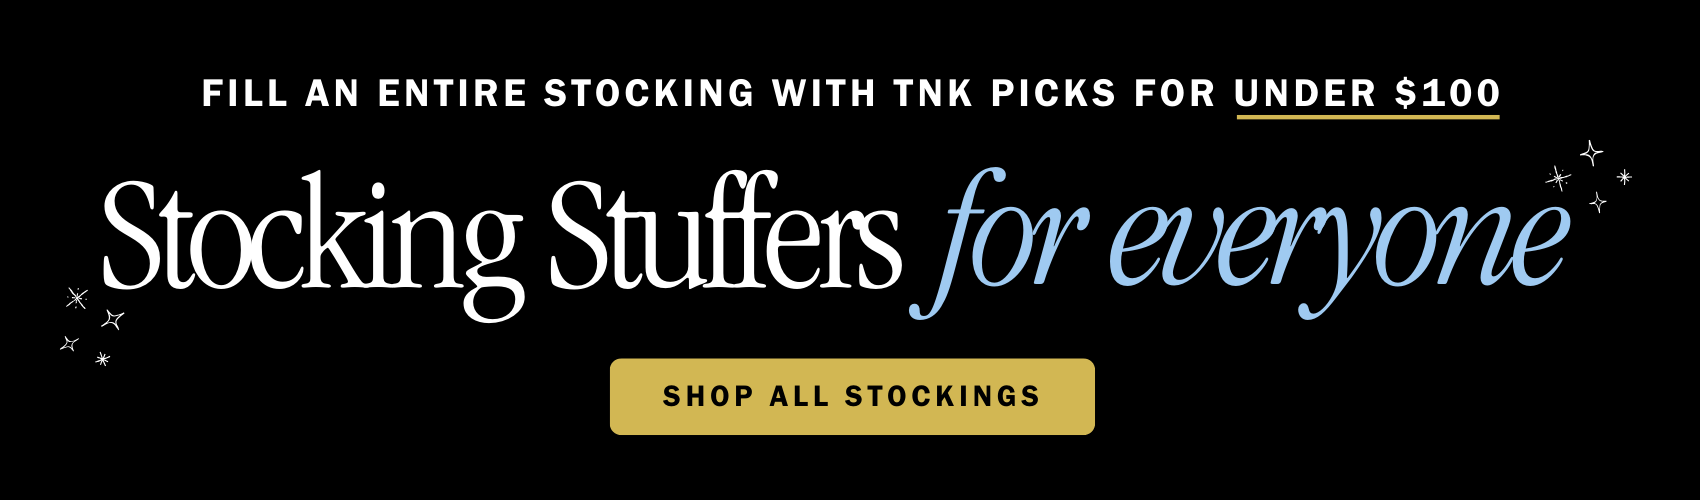 TNK stocking stuffer banner image.